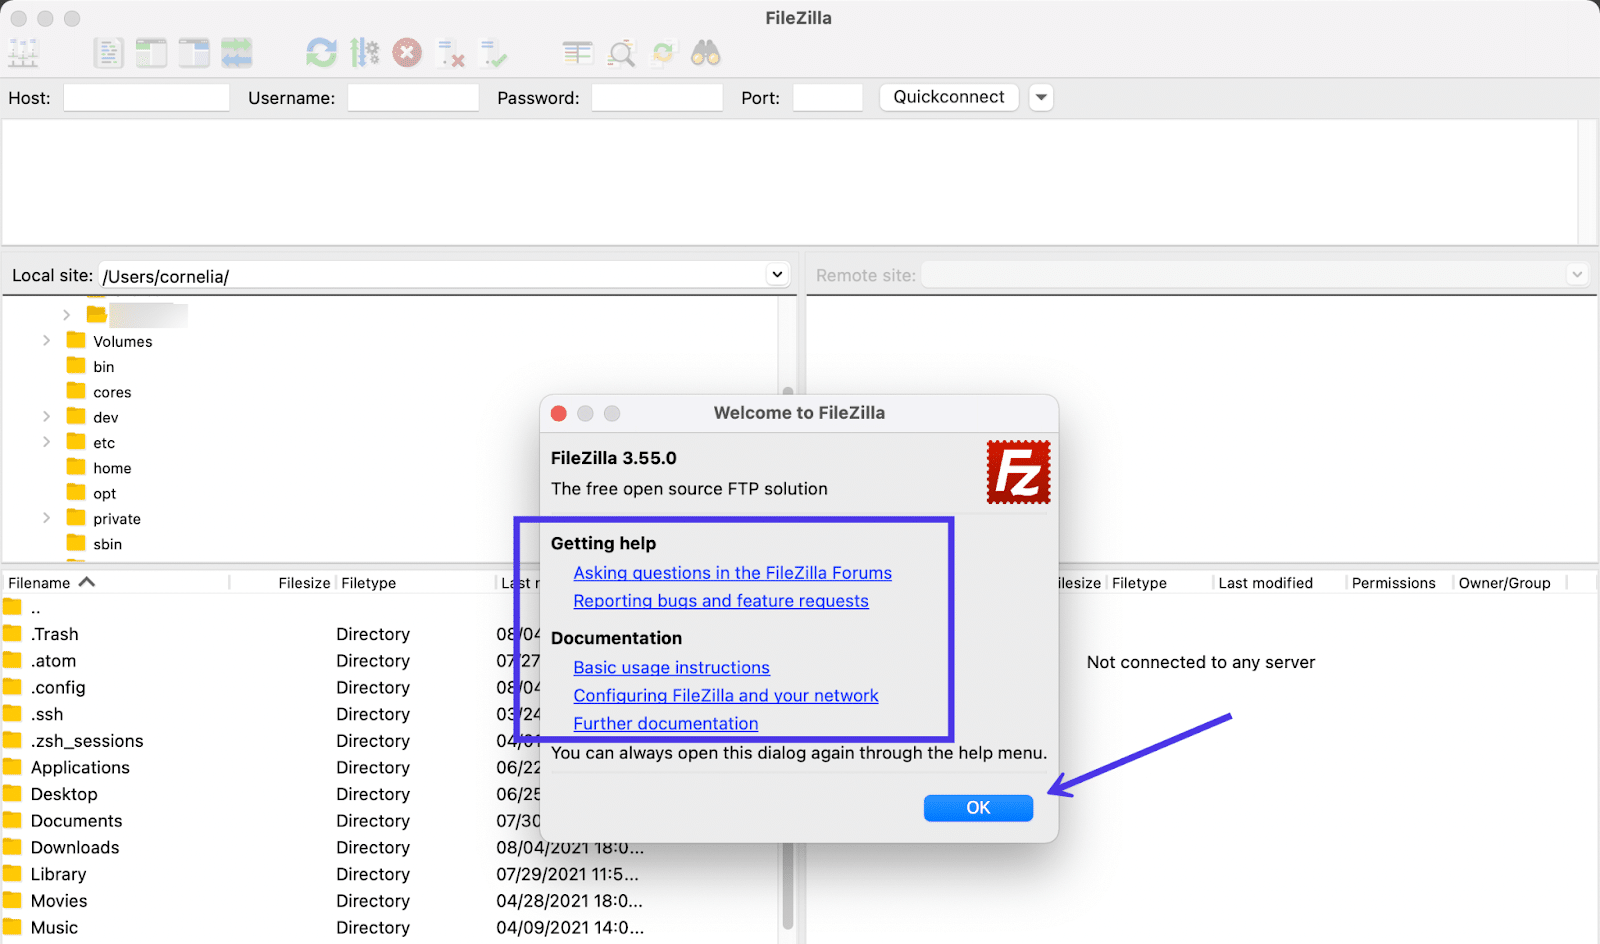 Raadpleeg de ondersteuningsdocumenten van FileZilla of ga naar het programma door op OK te klikken.